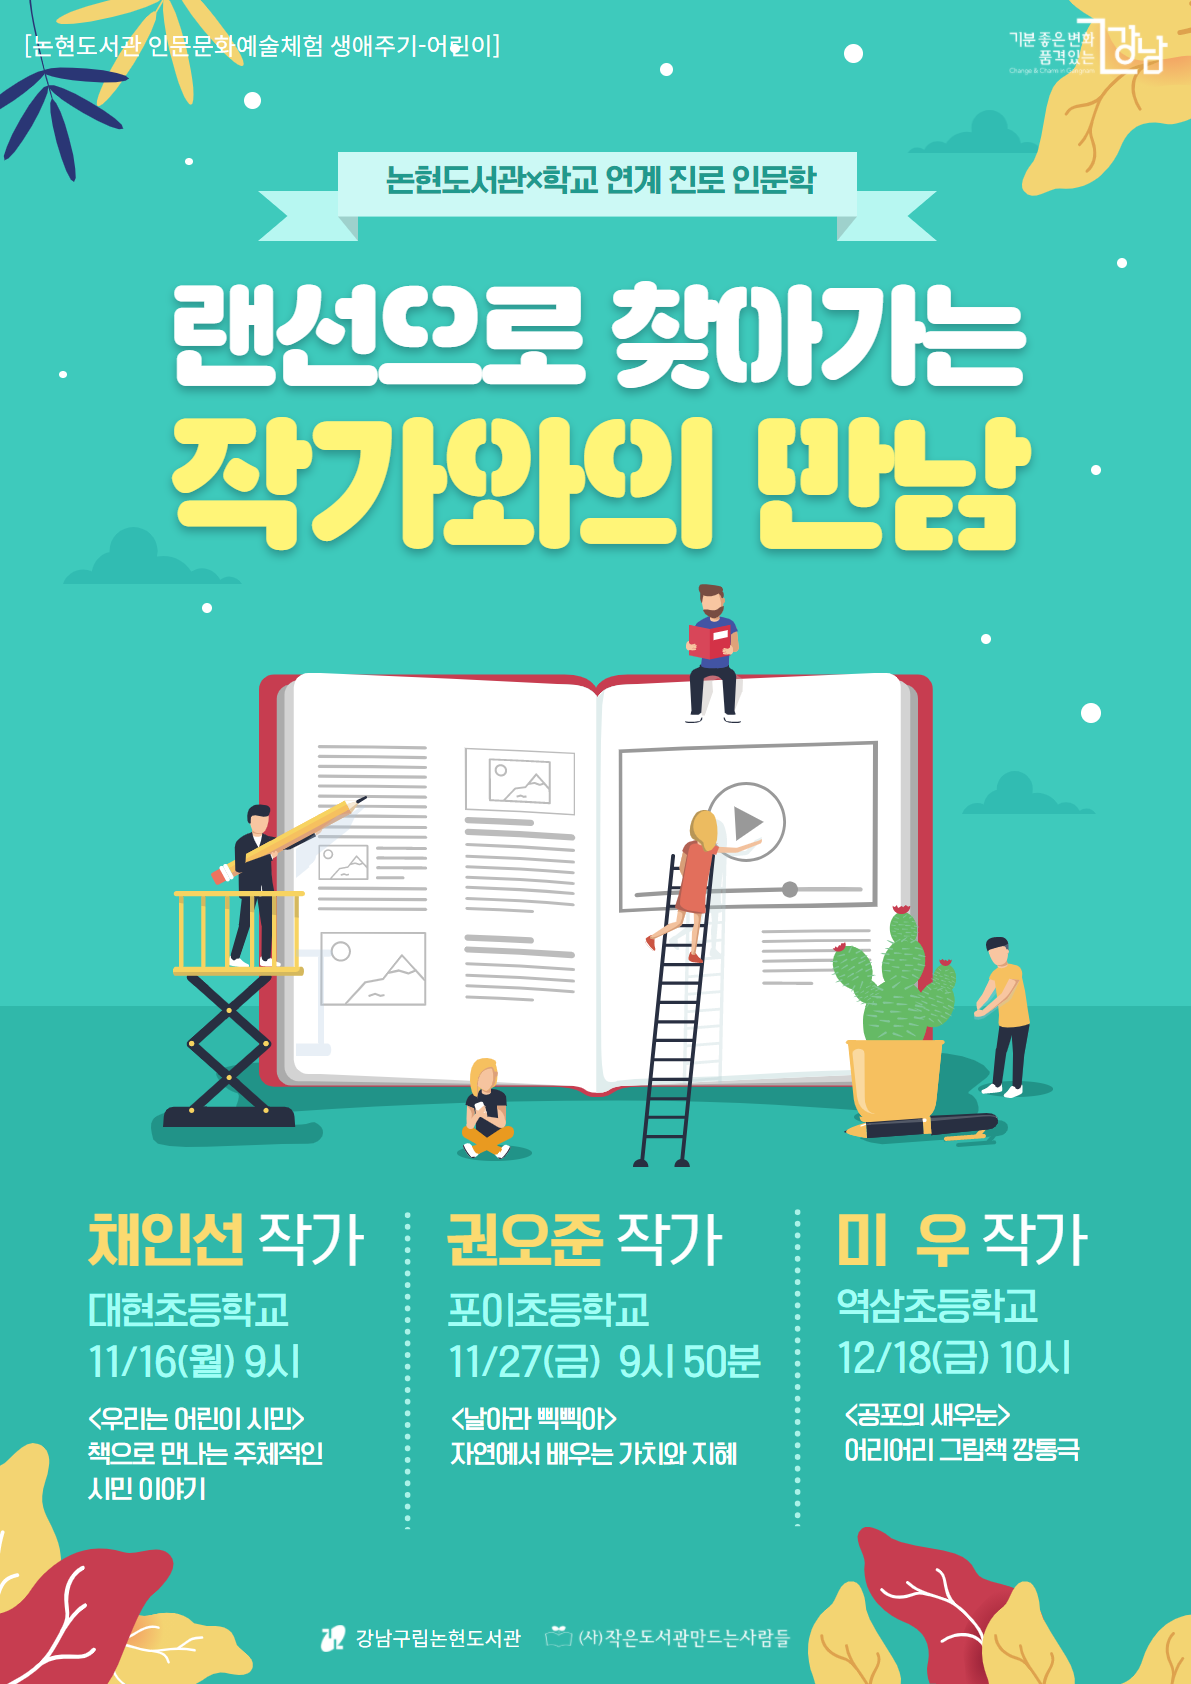 강남구립논현도서관, '랜선으로 찾아가는 작가와의 만남' 포스터